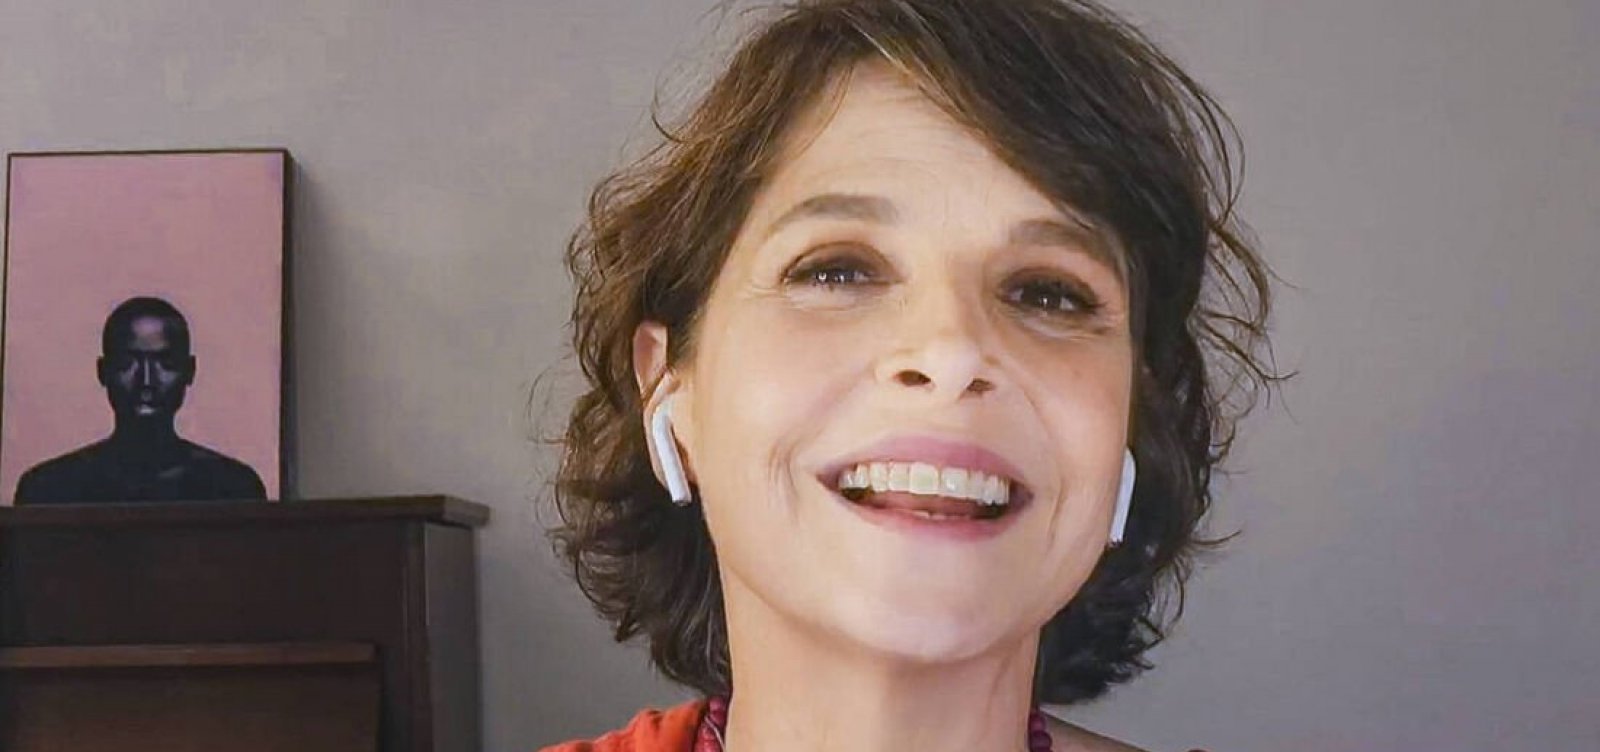 Drica Moraes comemora 14 anos do transplante de medula que salvou sua vida e homenageia doador